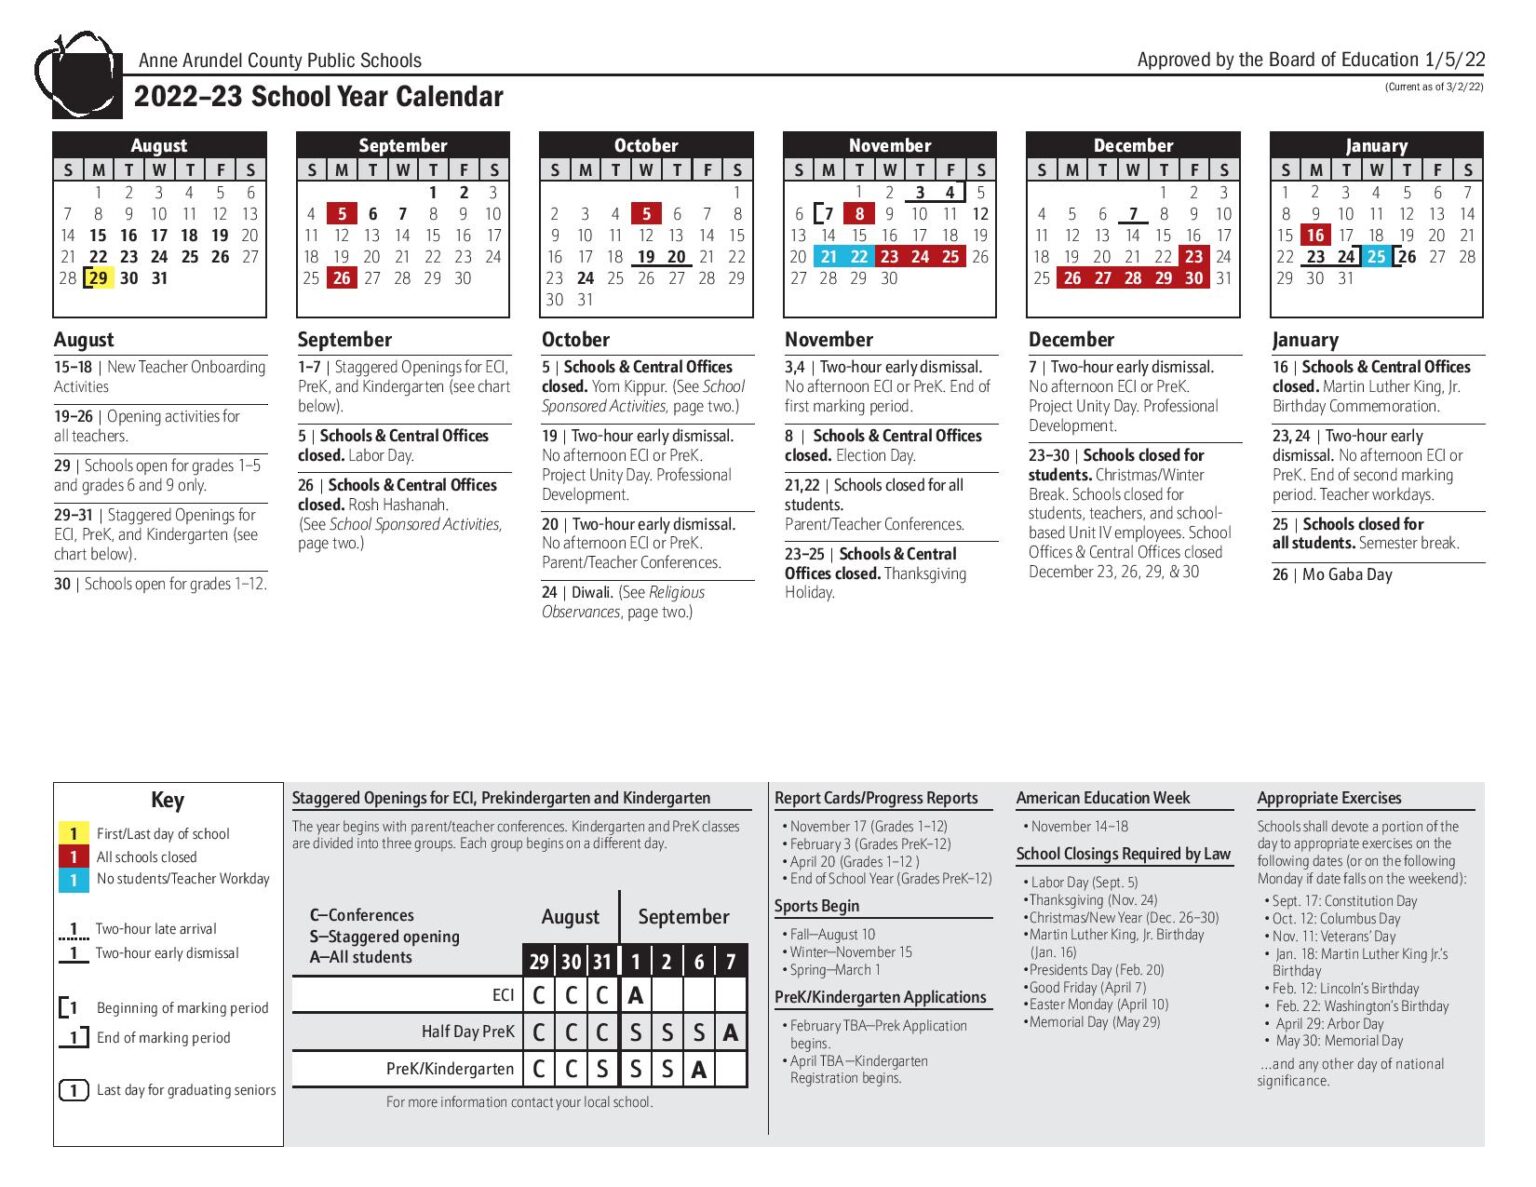 Anne Arundel County Public Schools Calendar 2022-2023 PDF